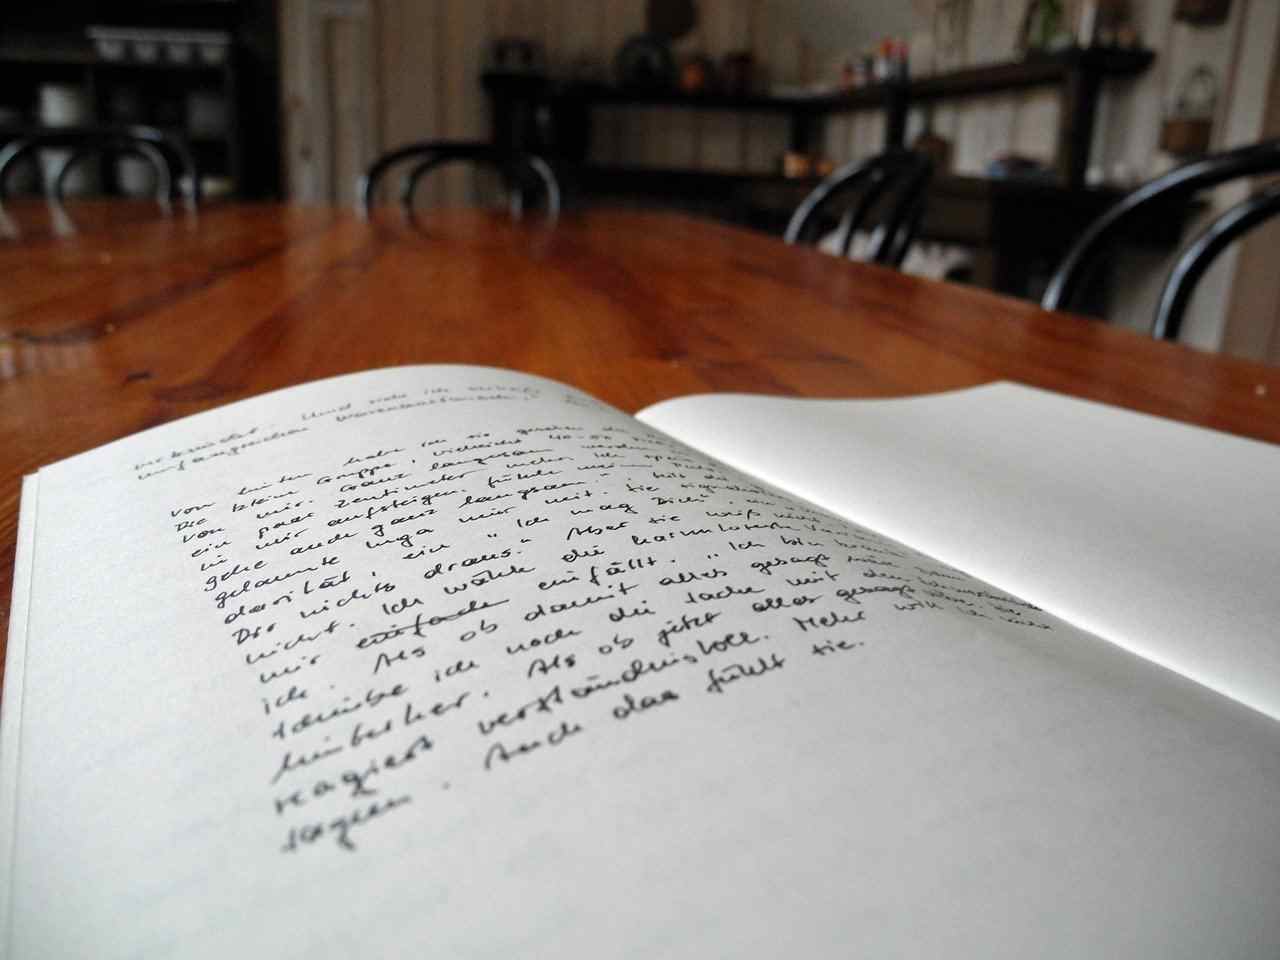 Kladde auf einem Tisch aufgeschlagen, die linke Seite in Handschrift beschrieben - Vollmond in Waage - eine neue Geschichte schreiben